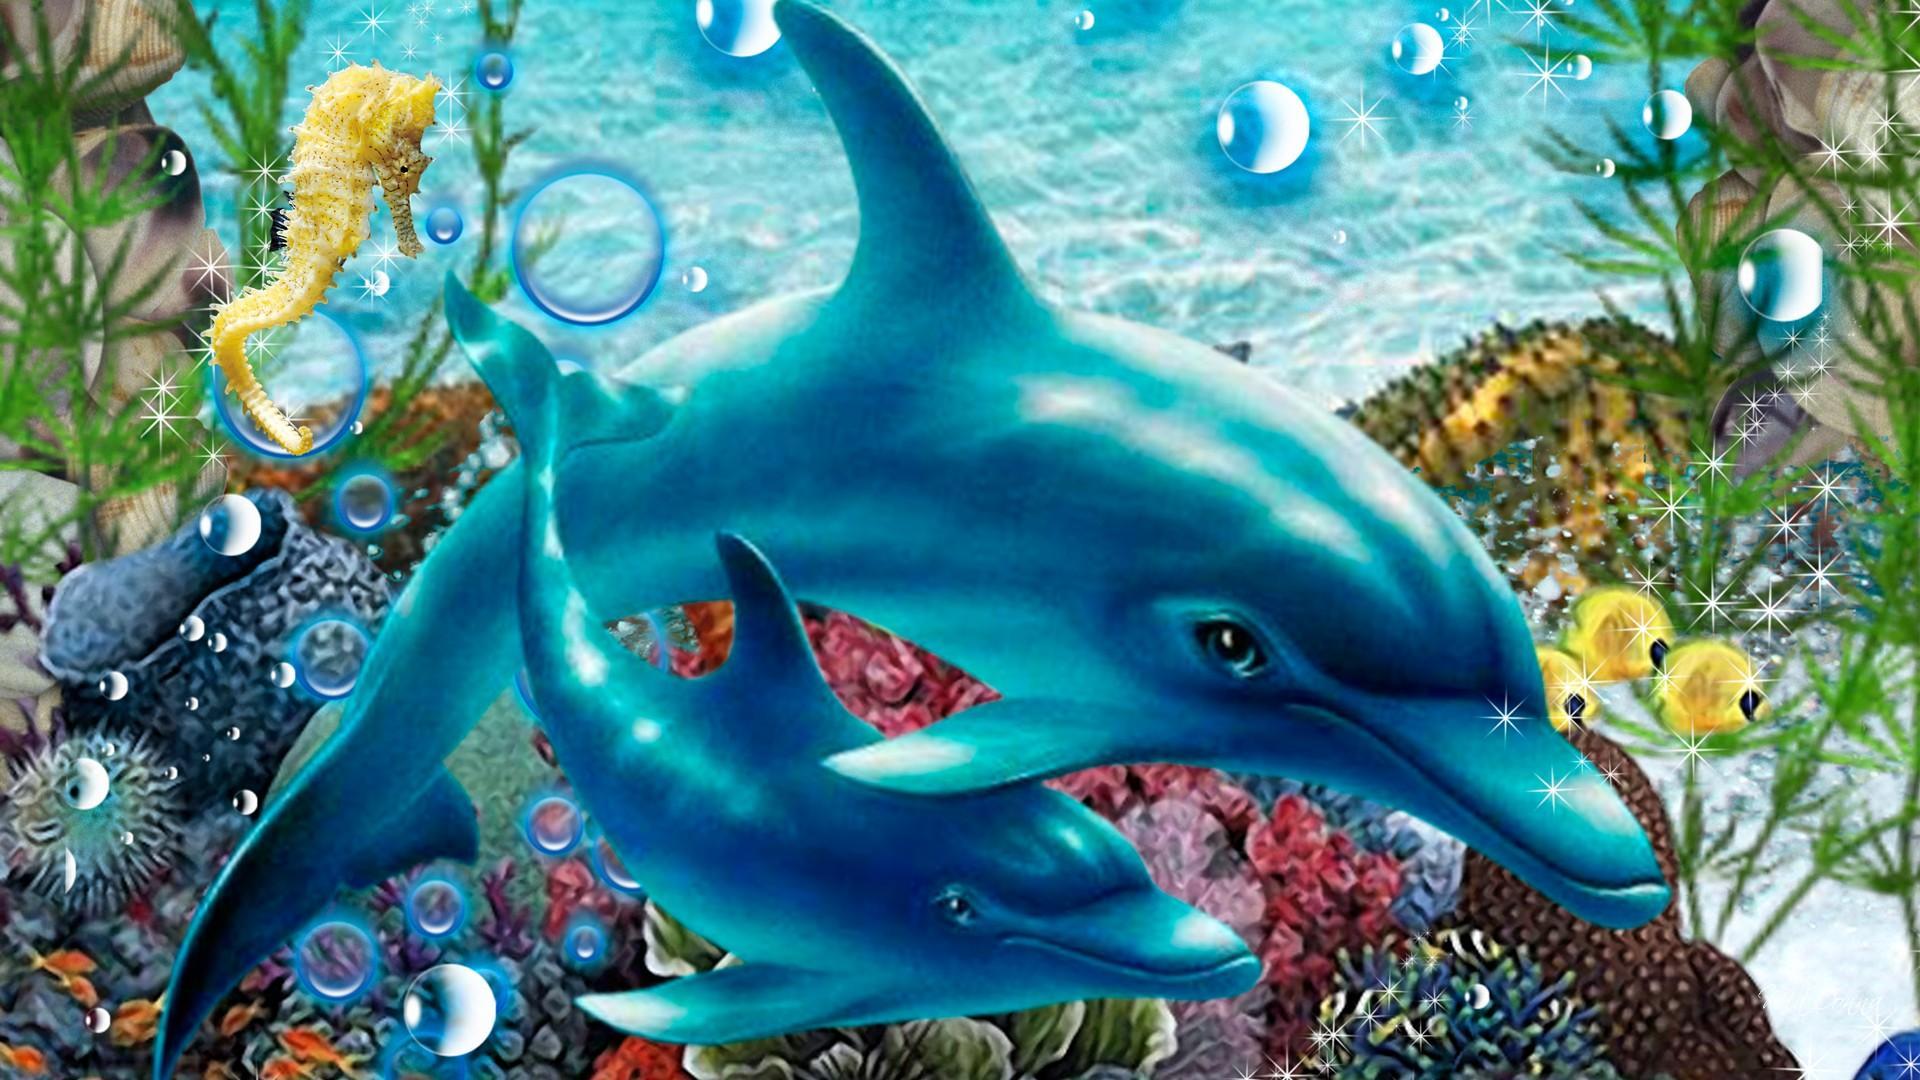 carta da parati fundo do mar,delfino,biologia marina,delfino di tursiope comune,delfino comune dal becco corto,mammifero marino